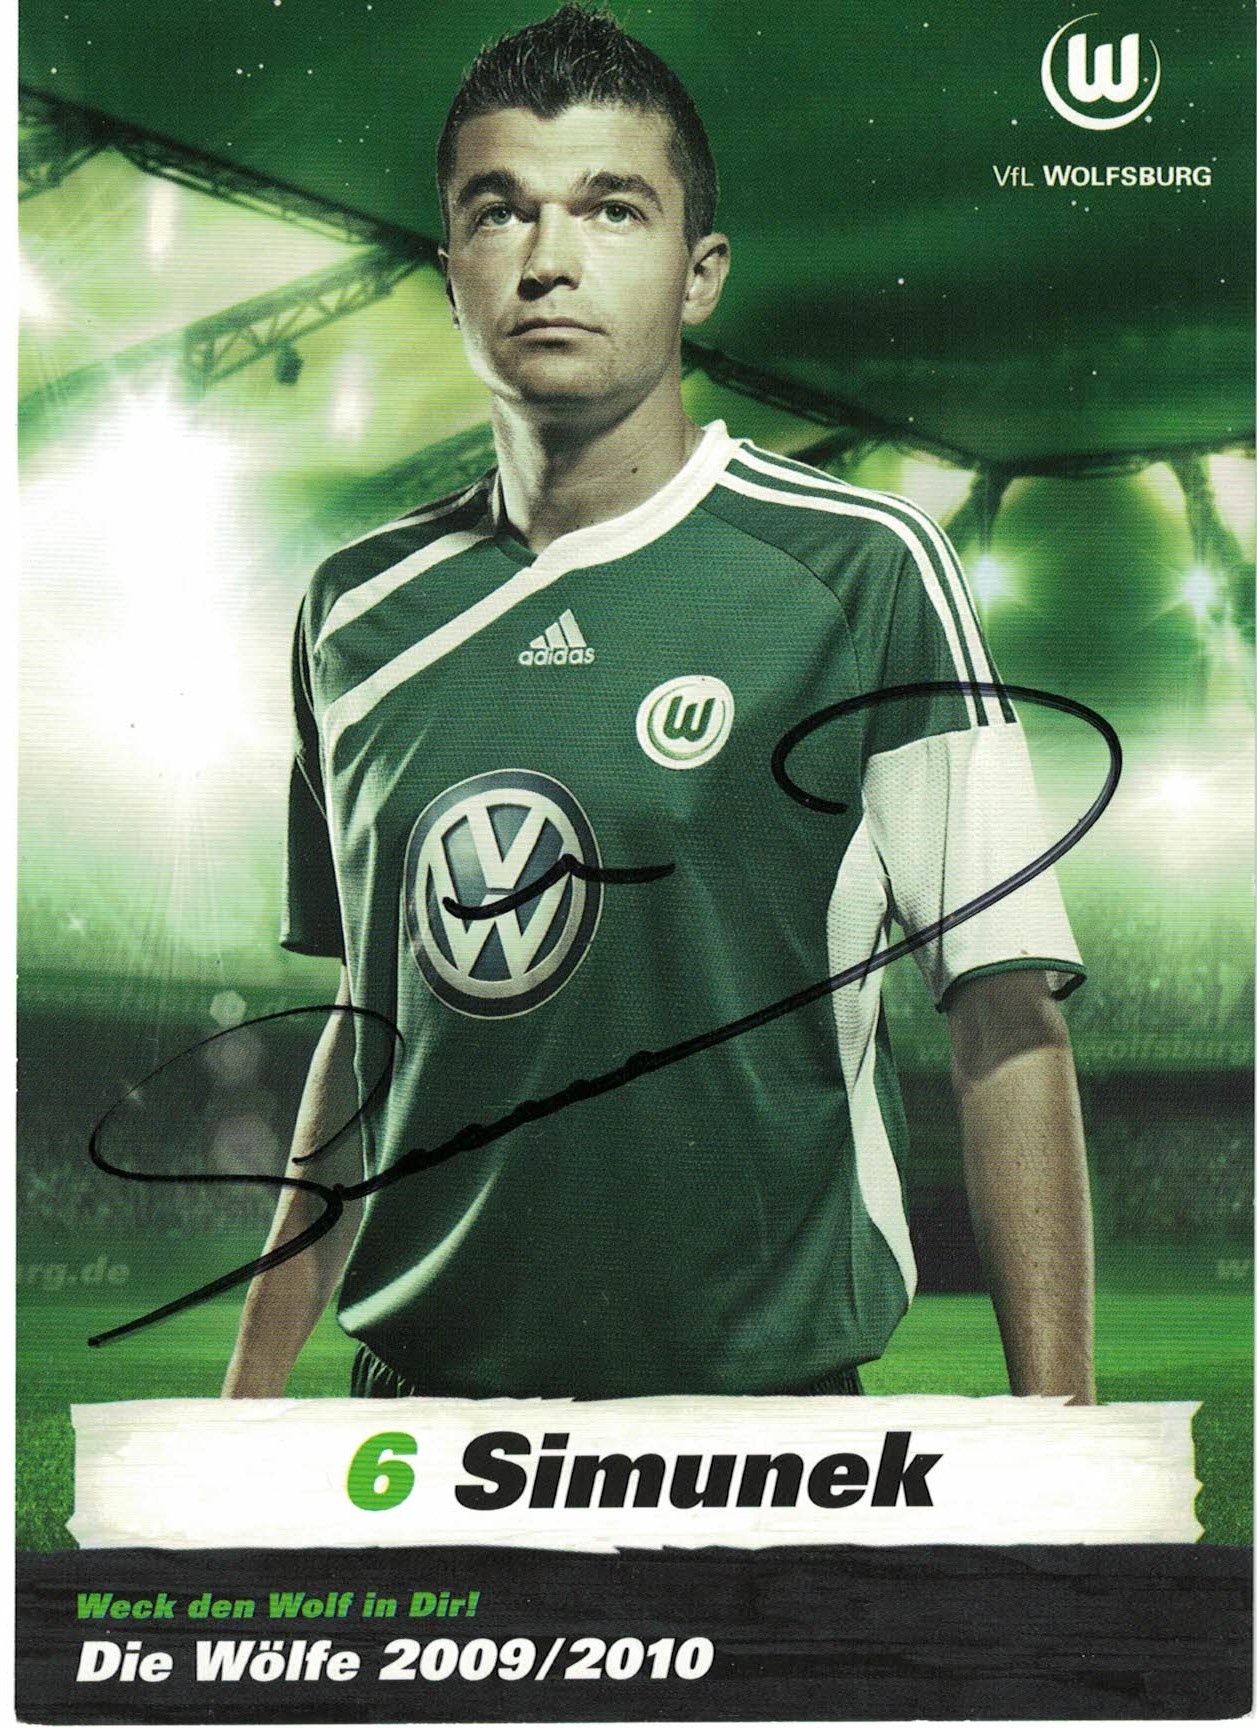 Jan Simunek VfL Wolfsburg 2009/10 Podpisova karta autogram